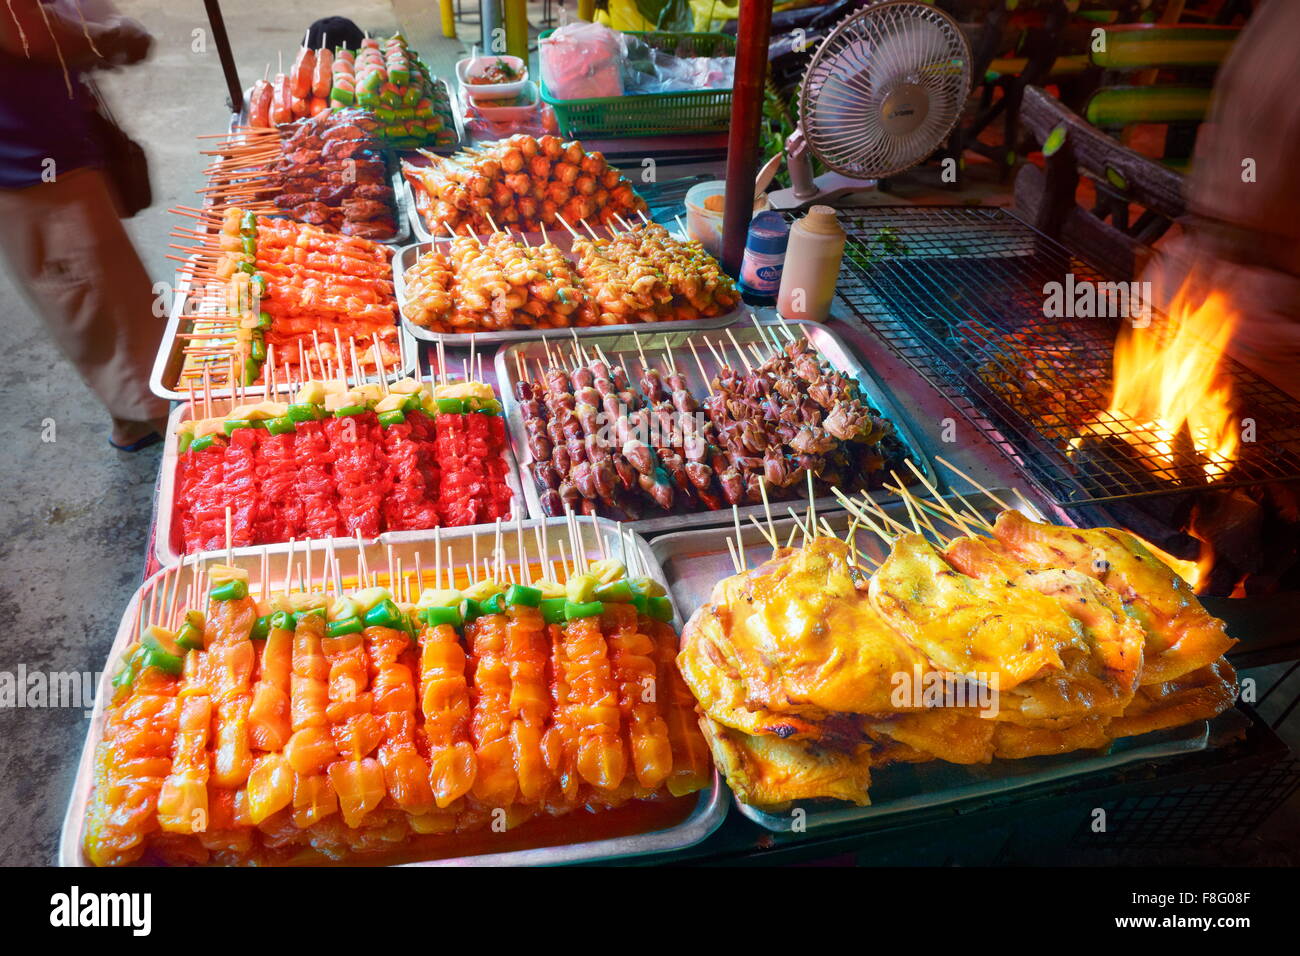 Marché alimentaire de la rue Thaïlande - Phuket, Thaïlande Banque D'Images